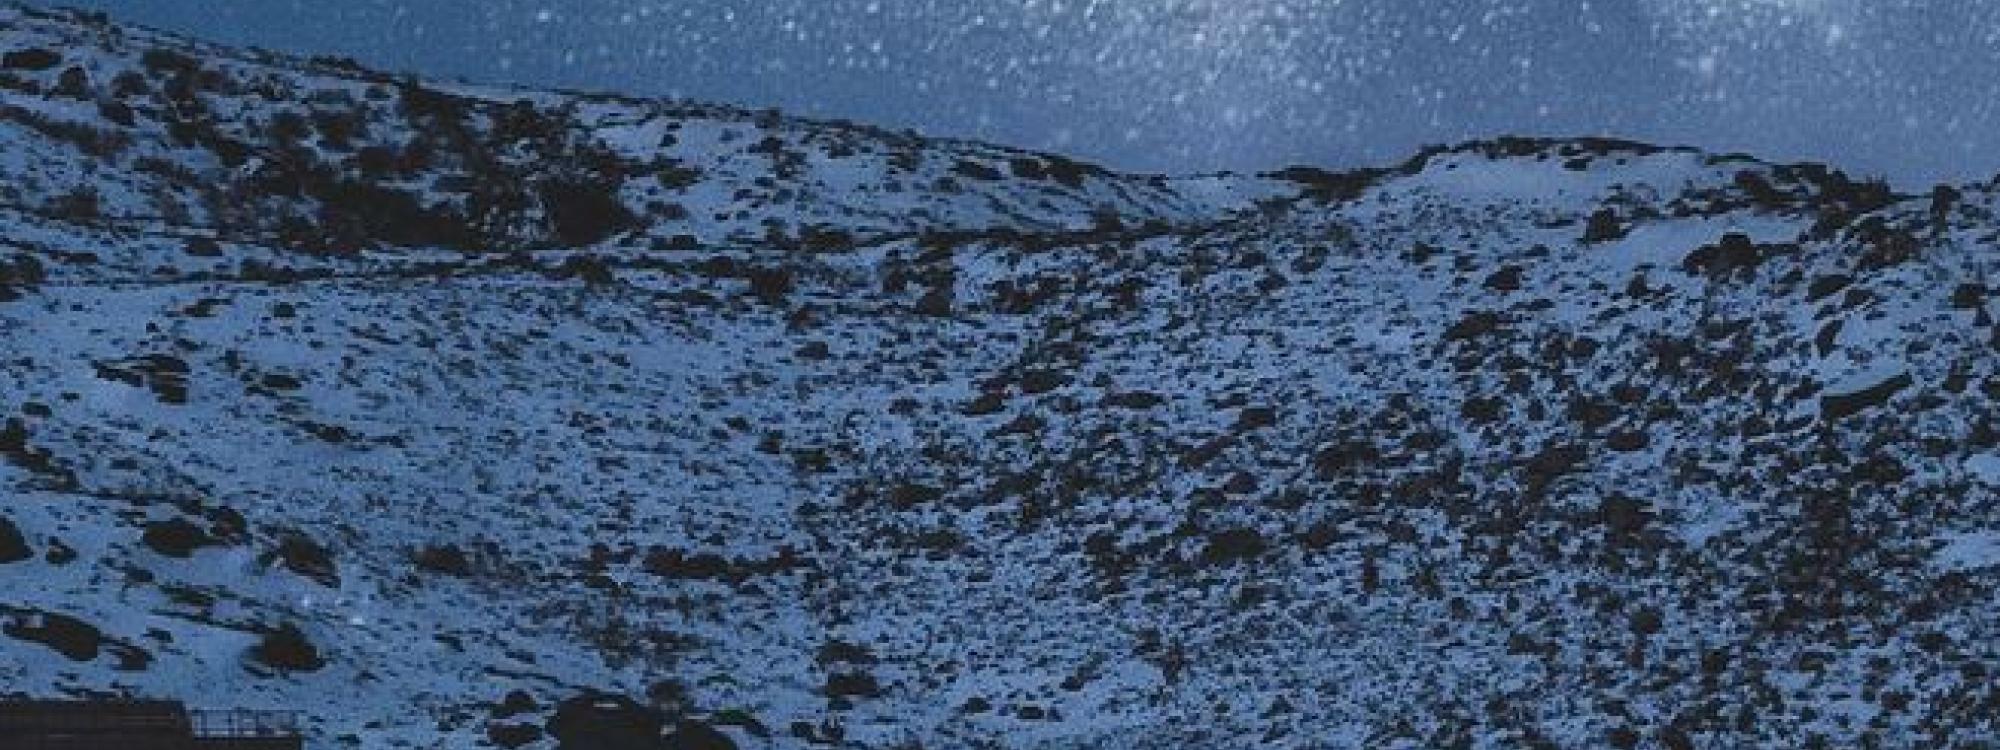 Snowy mountain scene at night